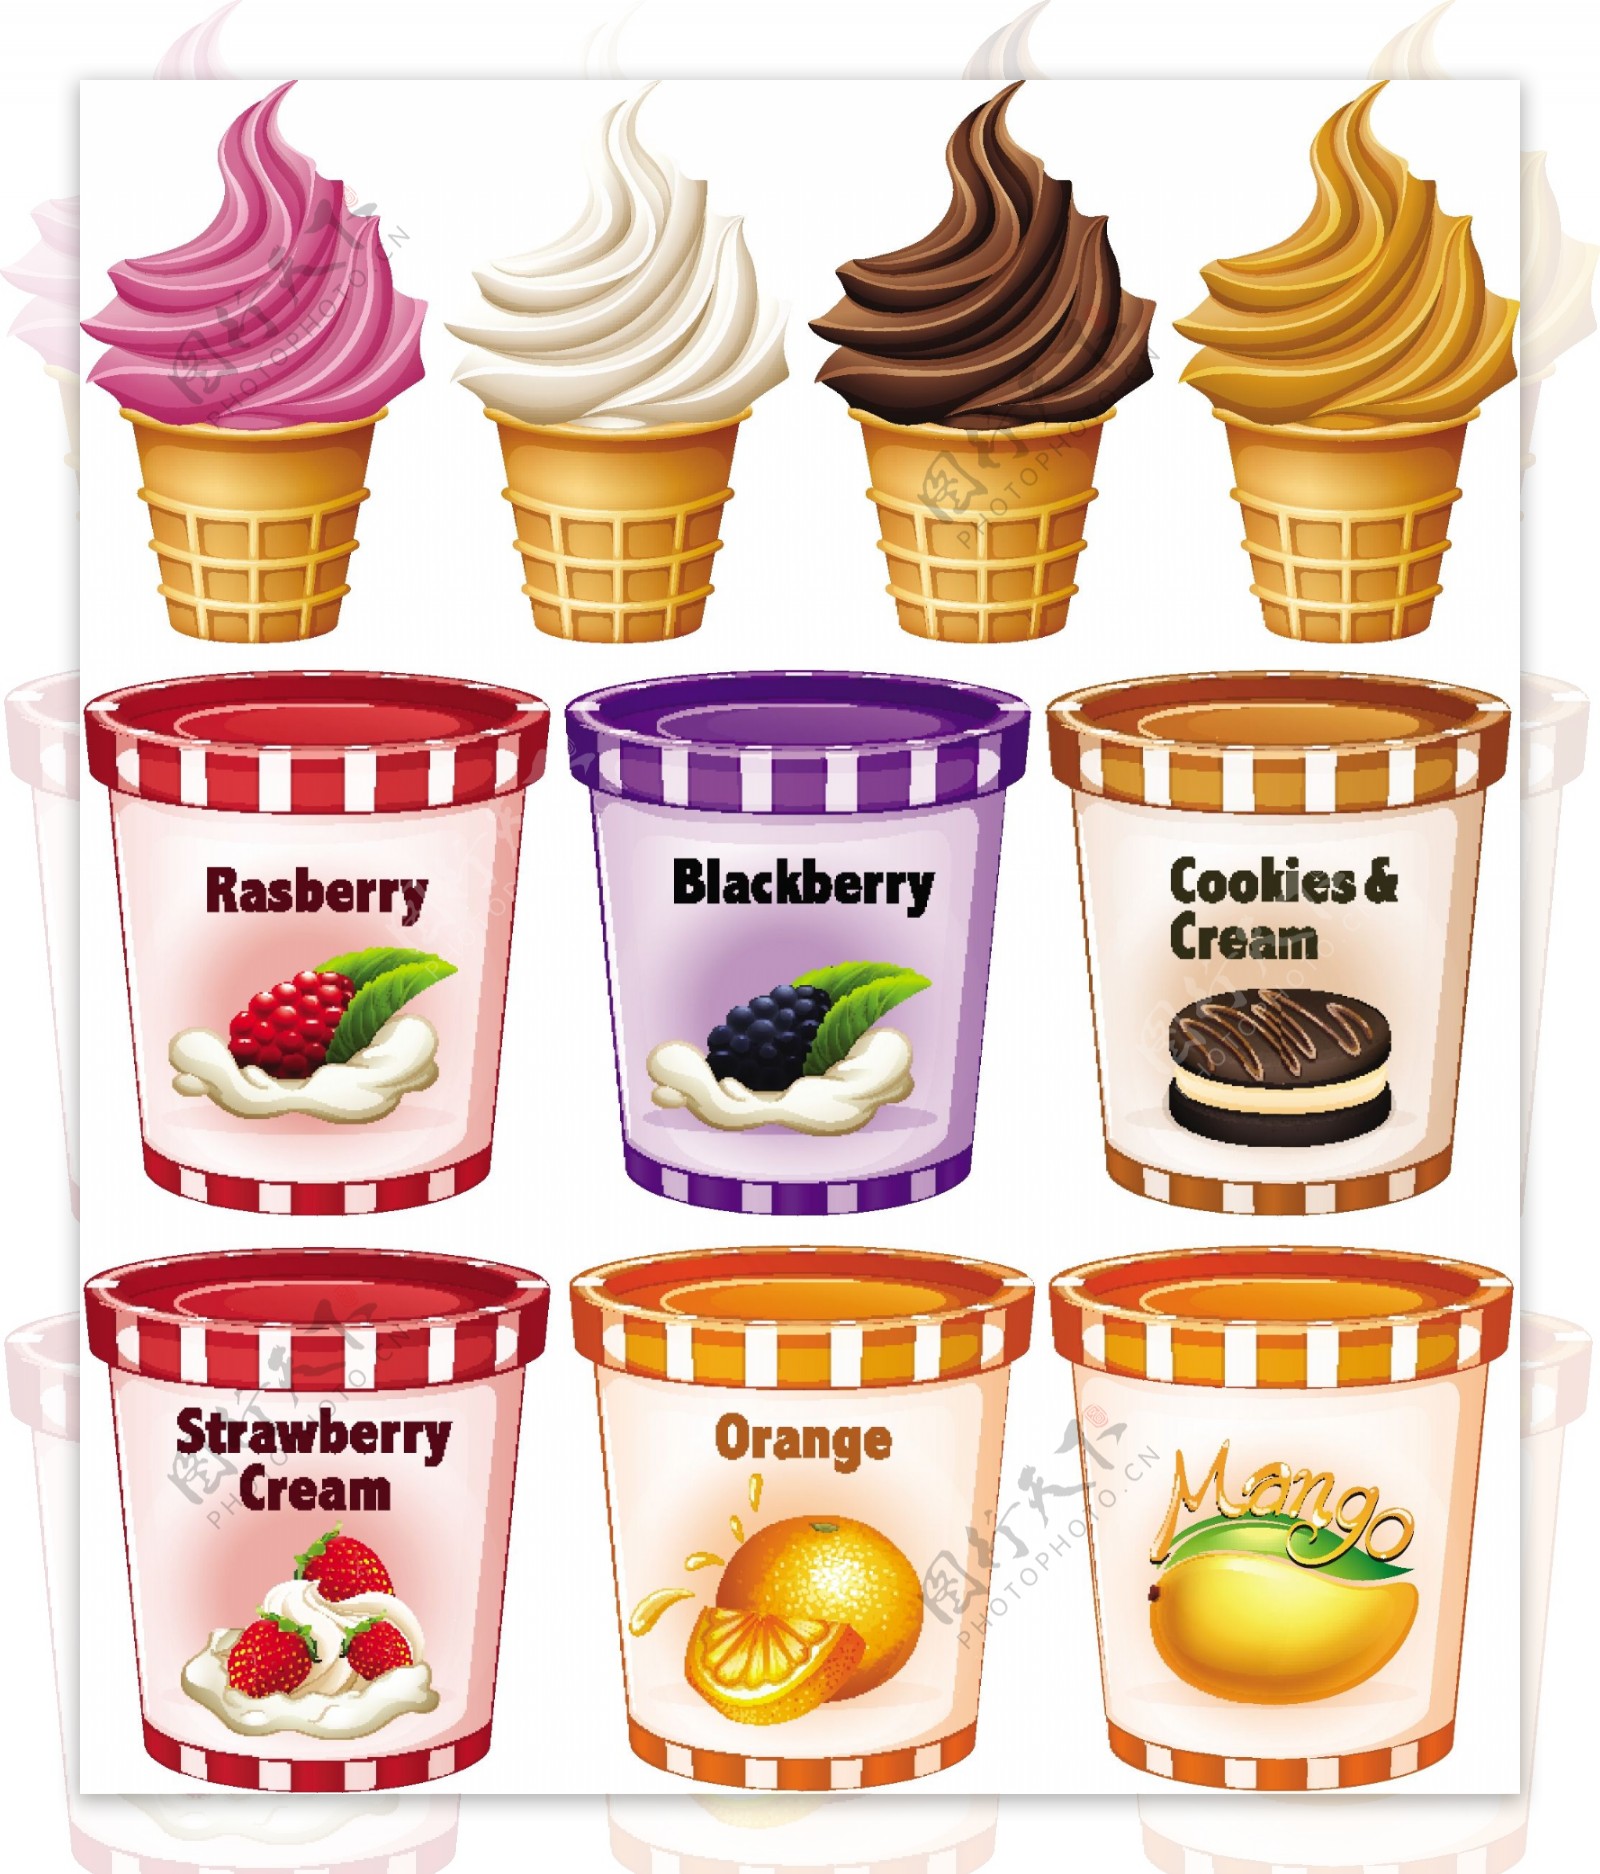 不同口味的冰淇淋和酸奶插图